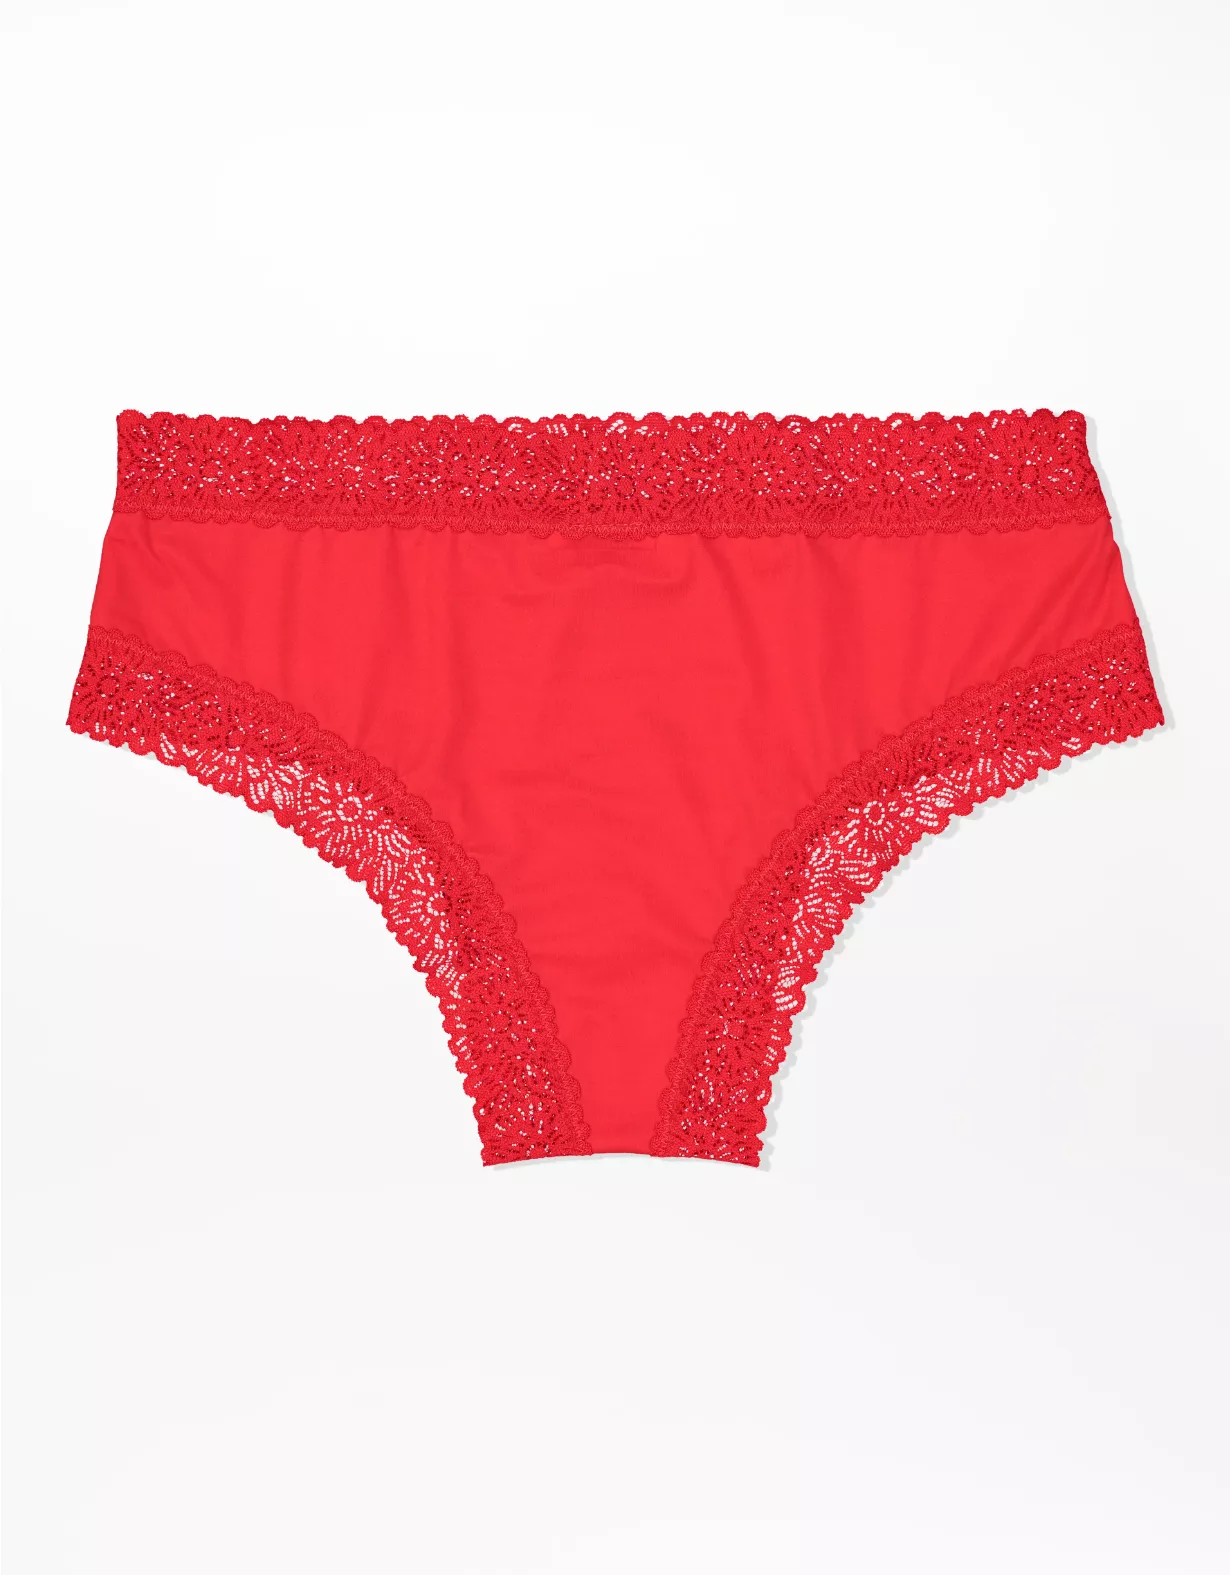 Aerie Sunnie Blossom Lace Cheeky Underwear